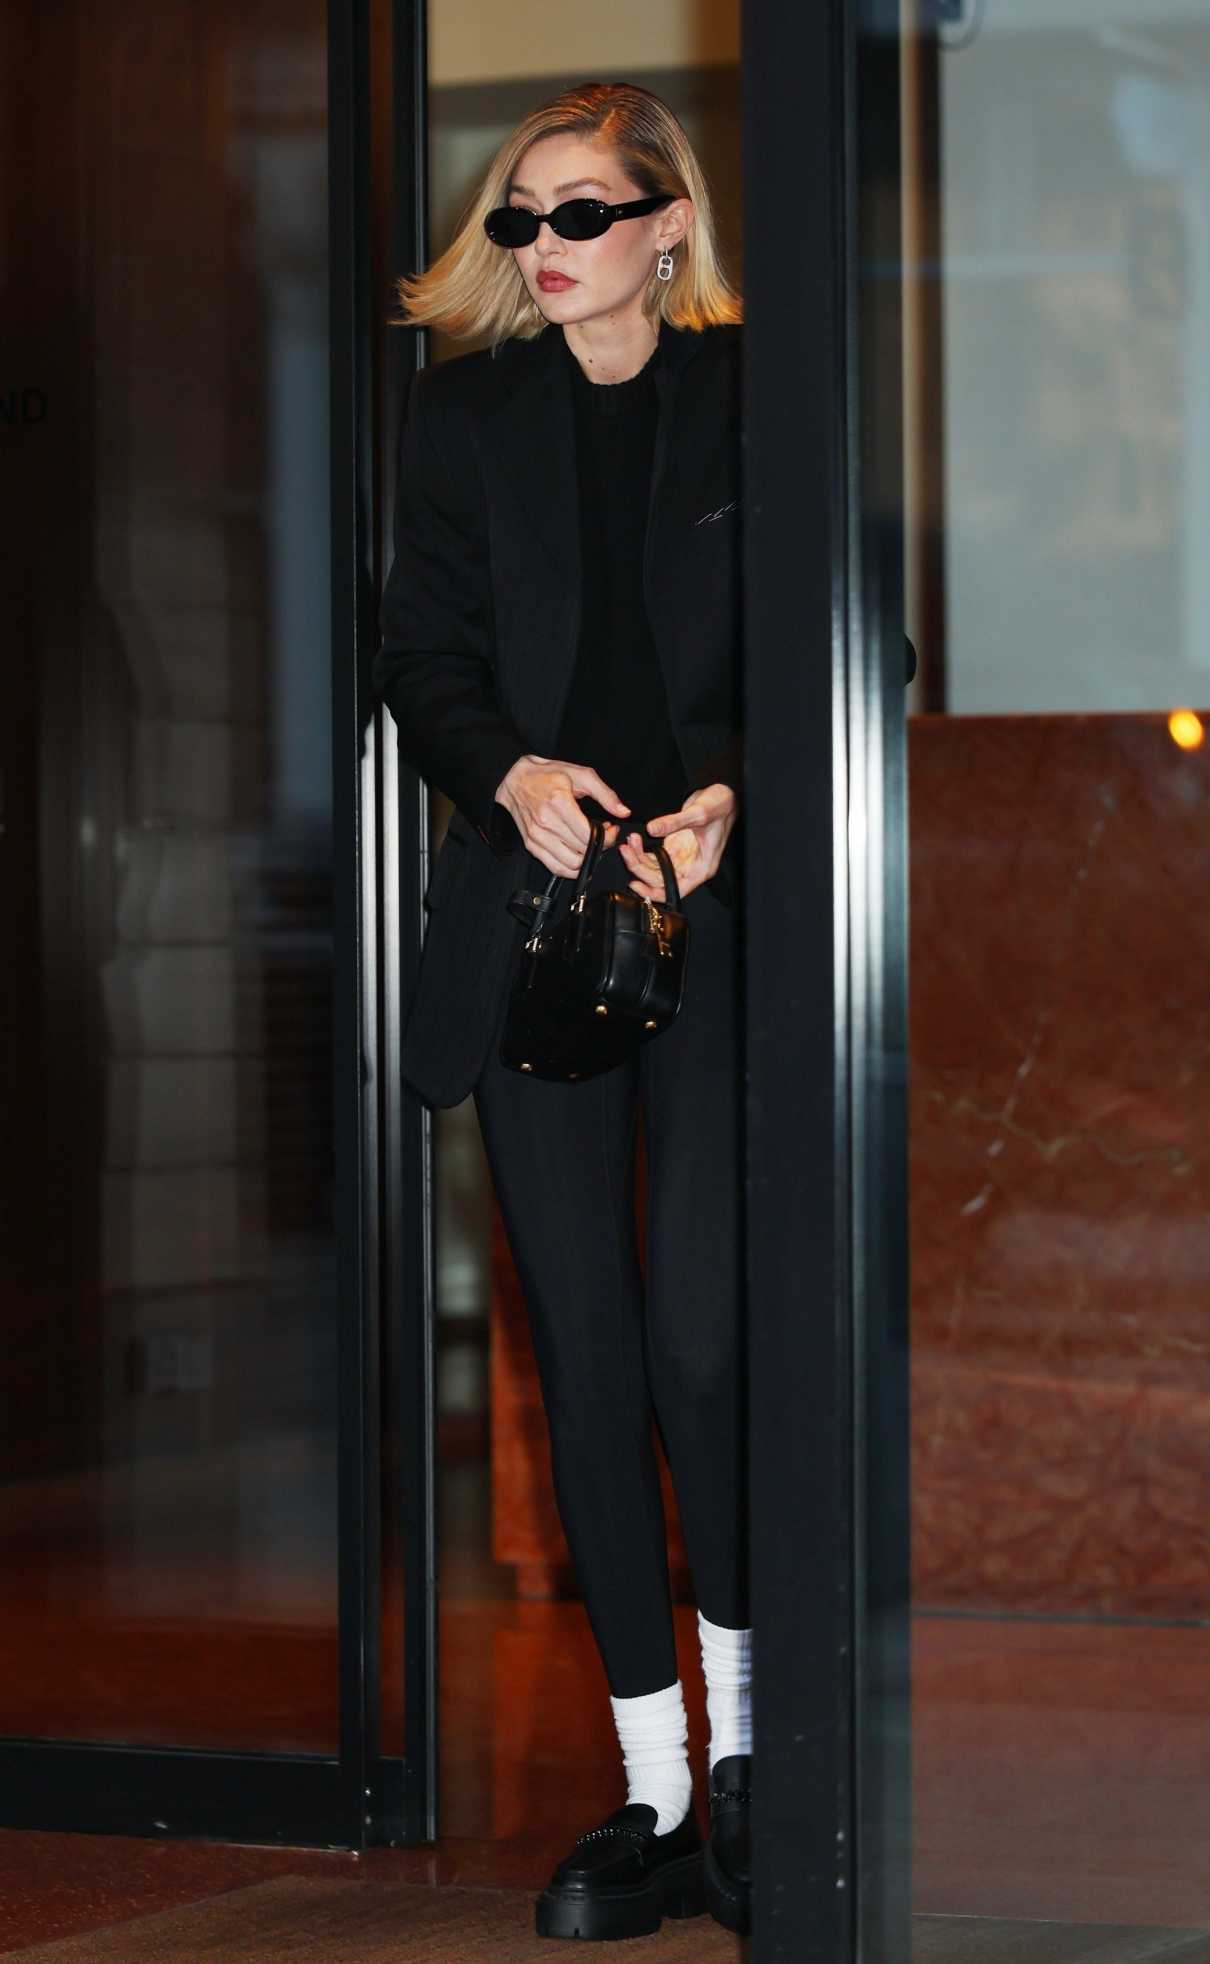 Gigi Hadid in a Black Blazer Leaves